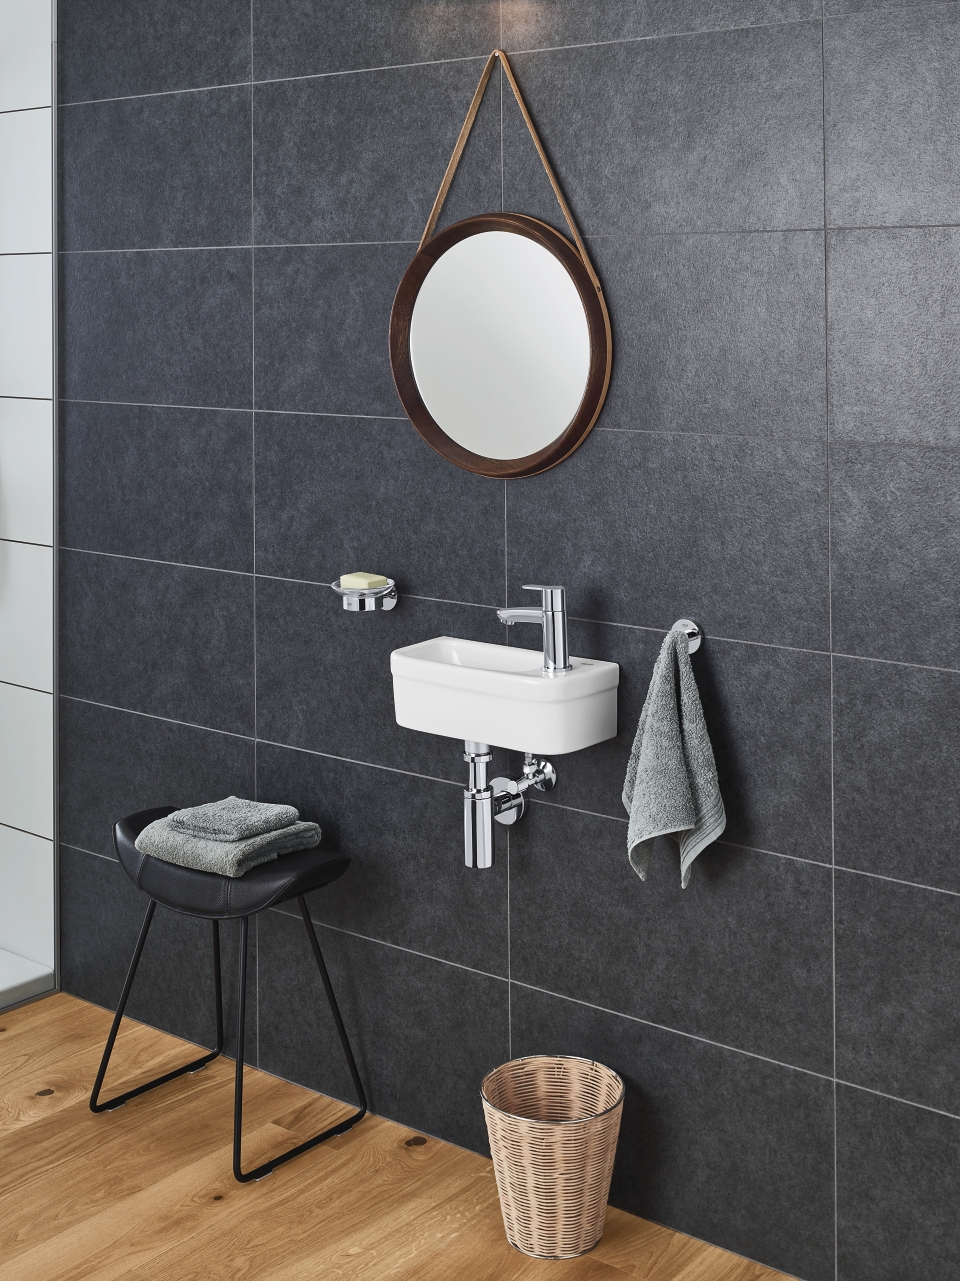 GROHE Eurostyle Cosmopolitan toiletkraan XS in chroom in badkamer